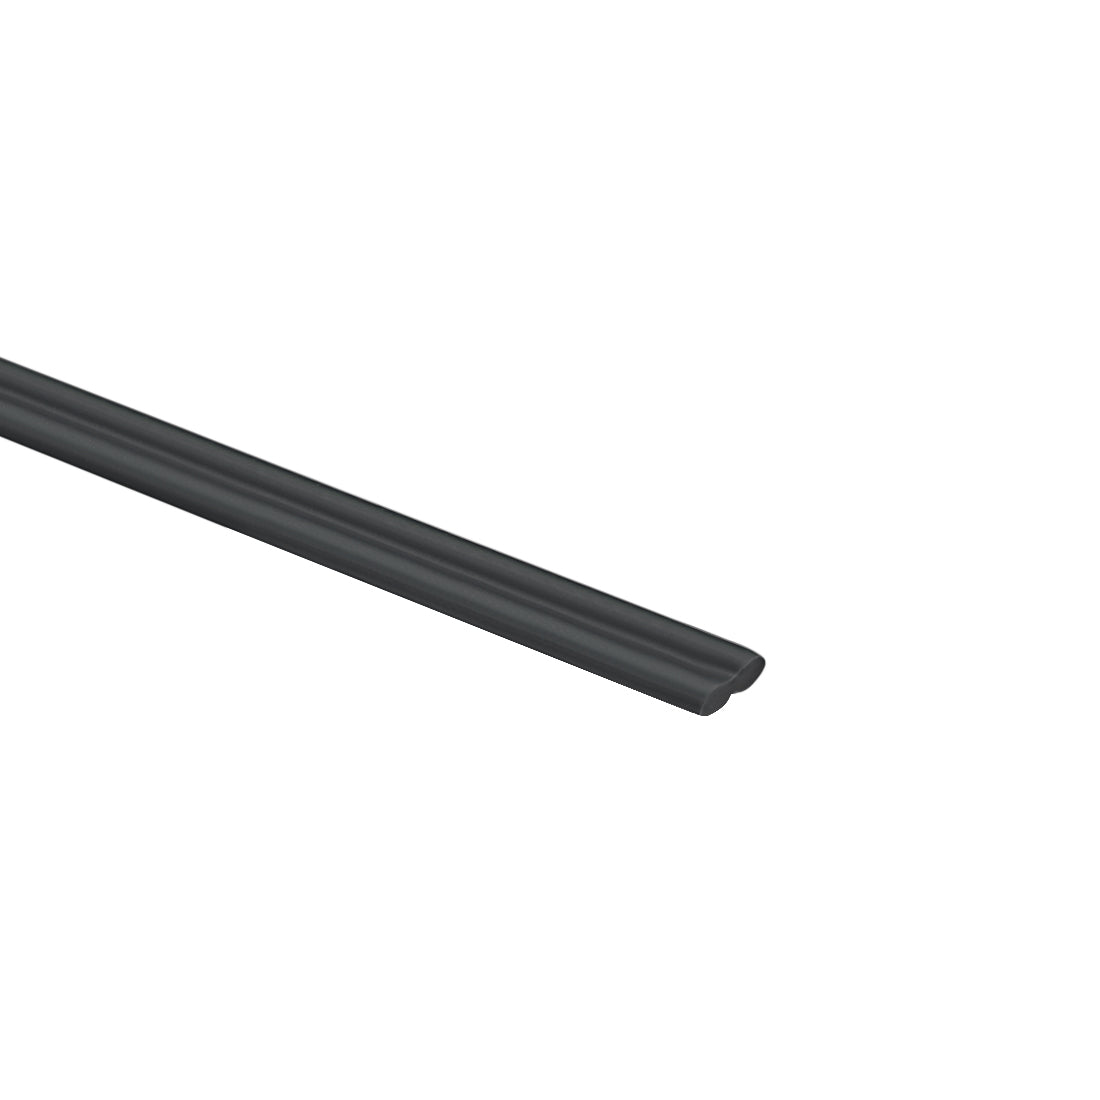 uxcell Uxcell PE Plastic Welding Rods,5mm Wide,2.5mm Thickness,1 Meter,Welding Stick,for Plastic Welder Gun/Hot Air Gun,Black